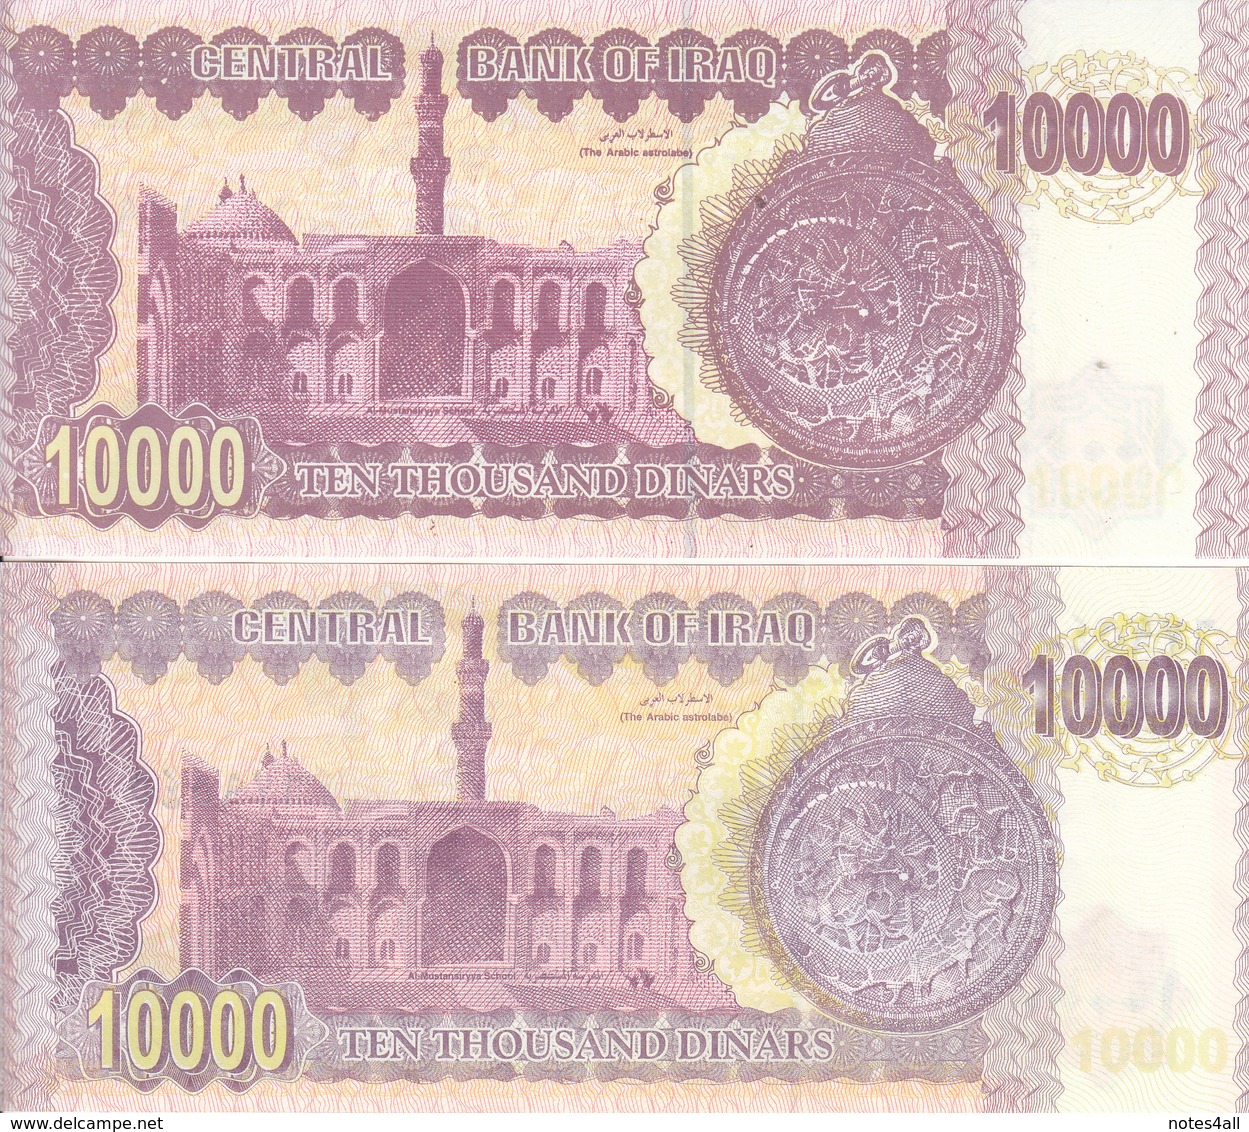 IRAQ 10000 DINARS 2001 2002 P-89 LOT X2 UNC NOTES DIFFERENT COLORS - Iraq